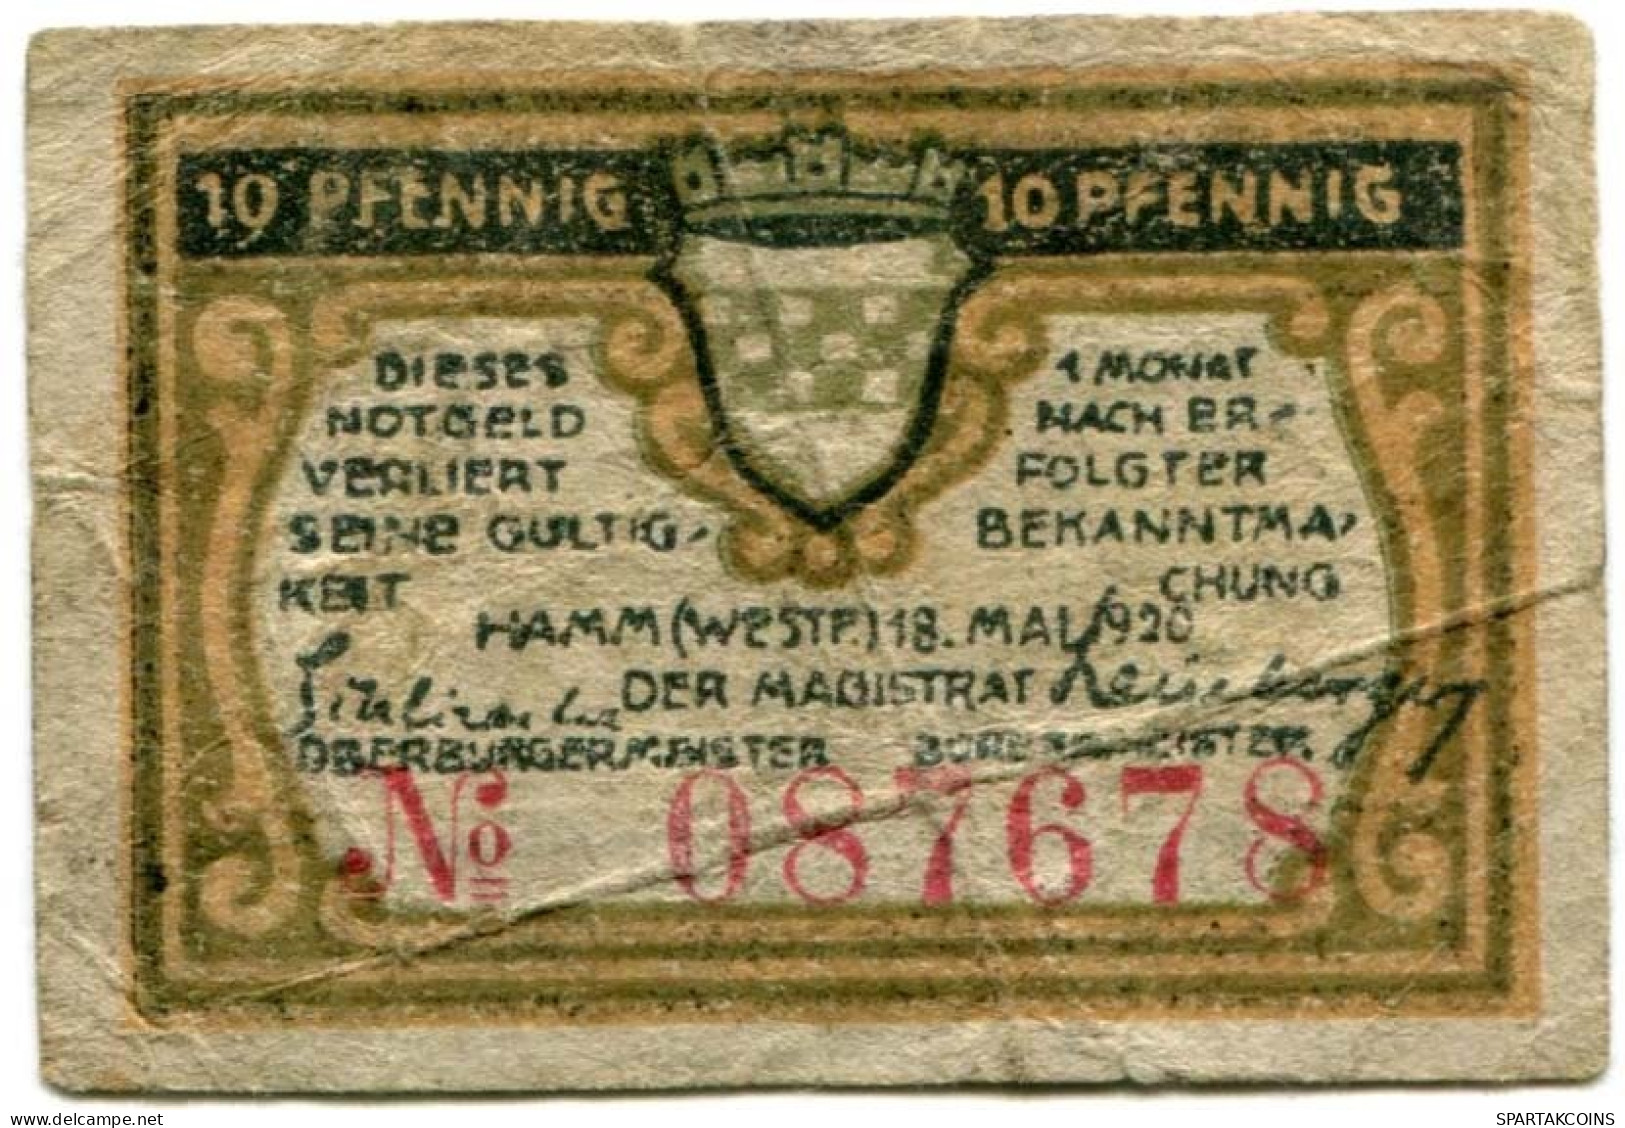 10 PFENNIG 1920 Stadt HAMM Westphalia DEUTSCHLAND Notgeld Papiergeld Banknote #PL600 - Lokale Ausgaben